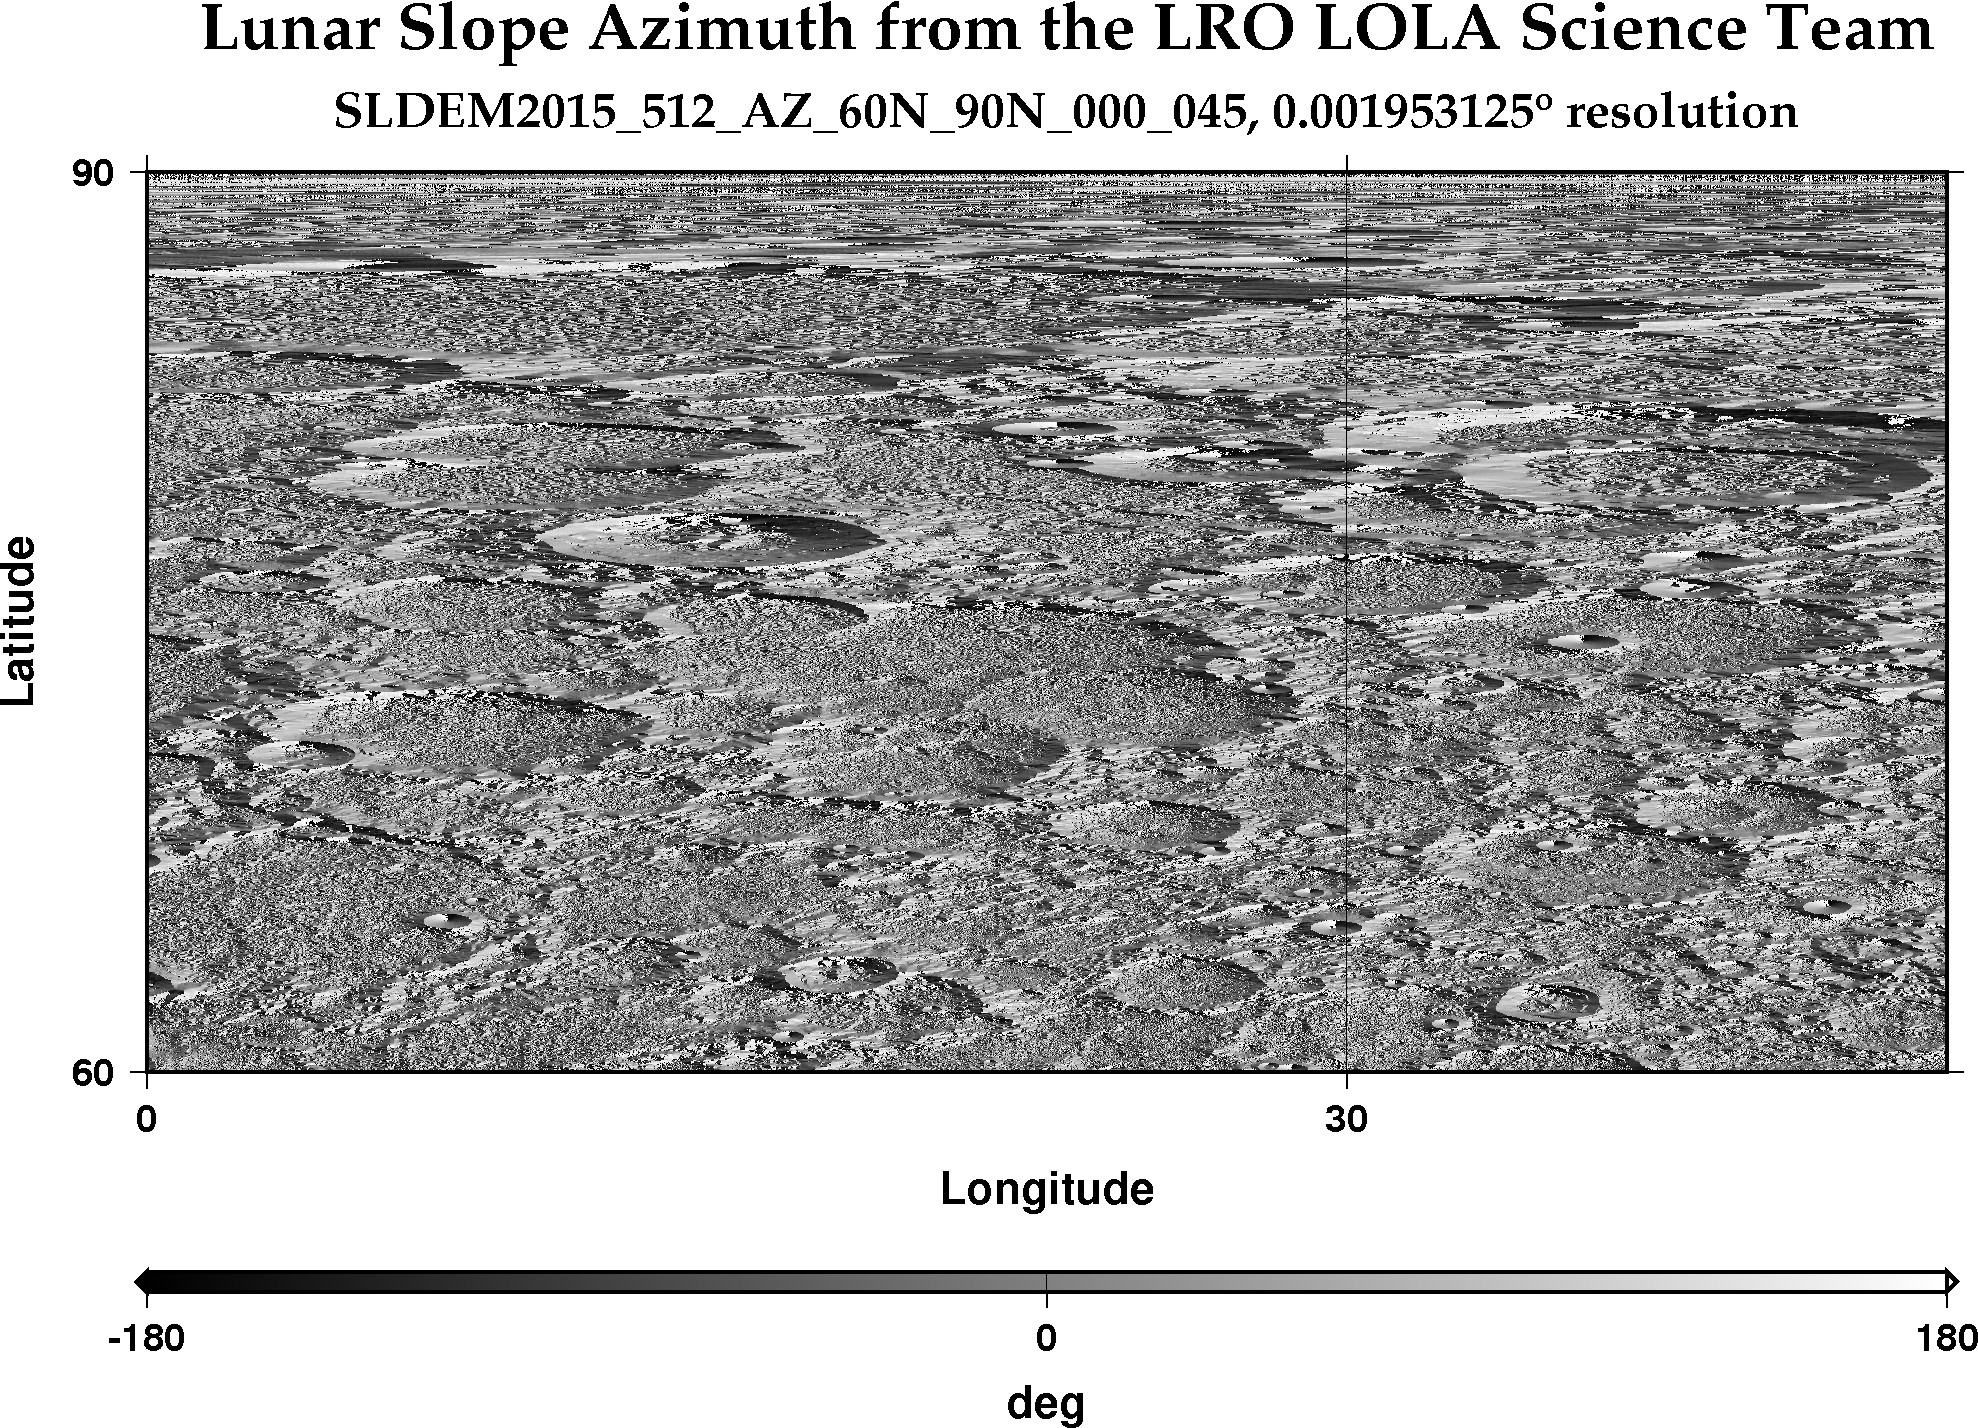 image of lunar topography for SLDEM2015_512_AZ_60N_90N_000_045